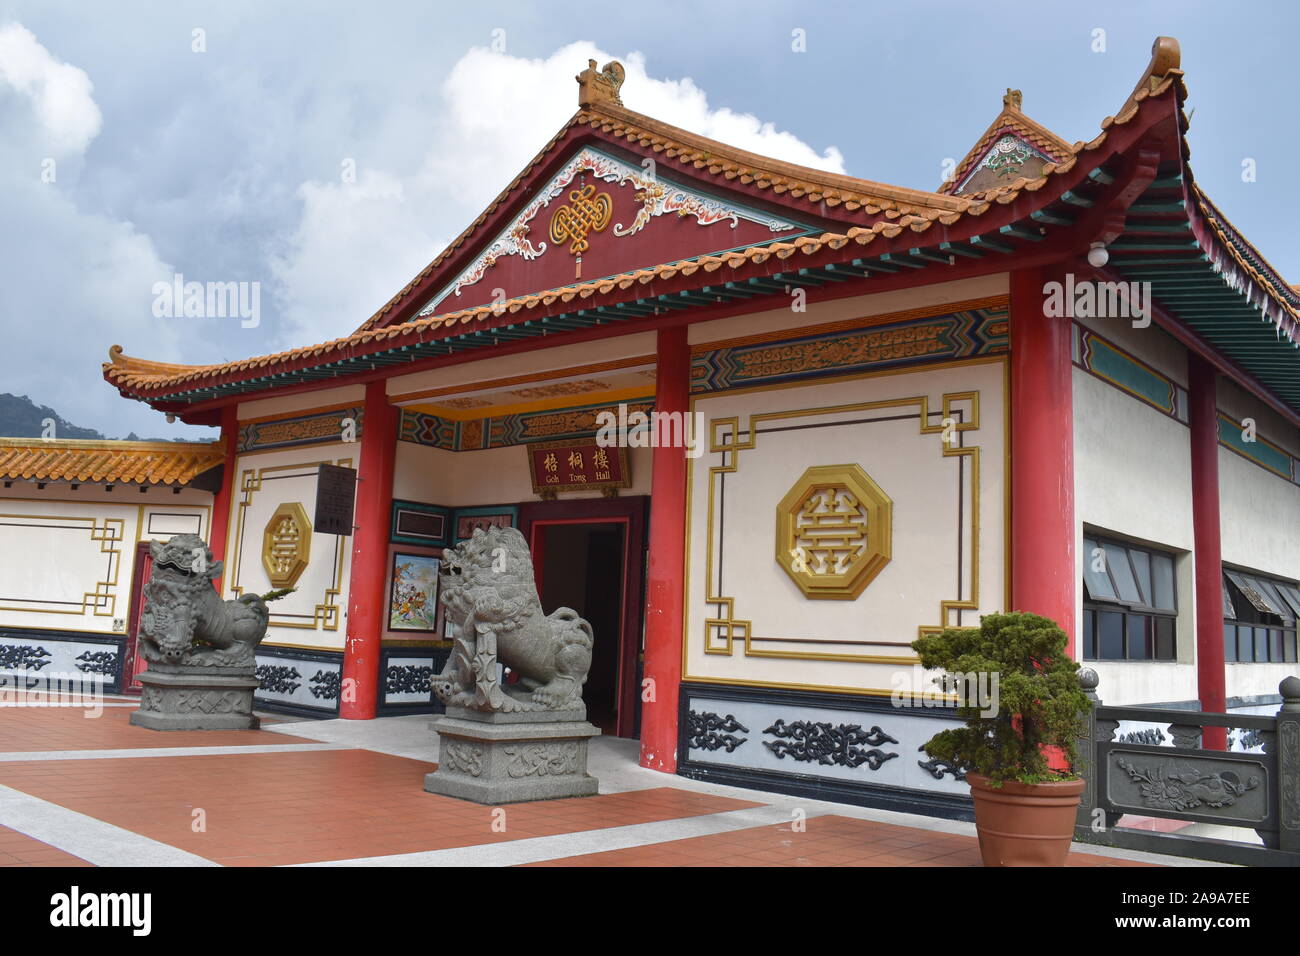 Chin swee temple Chinois en rouge et or avec deux statue de pierre des lions à l'entrée à l'architecture unique dans la région de Cameron Highlands, Malaisie Banque D'Images